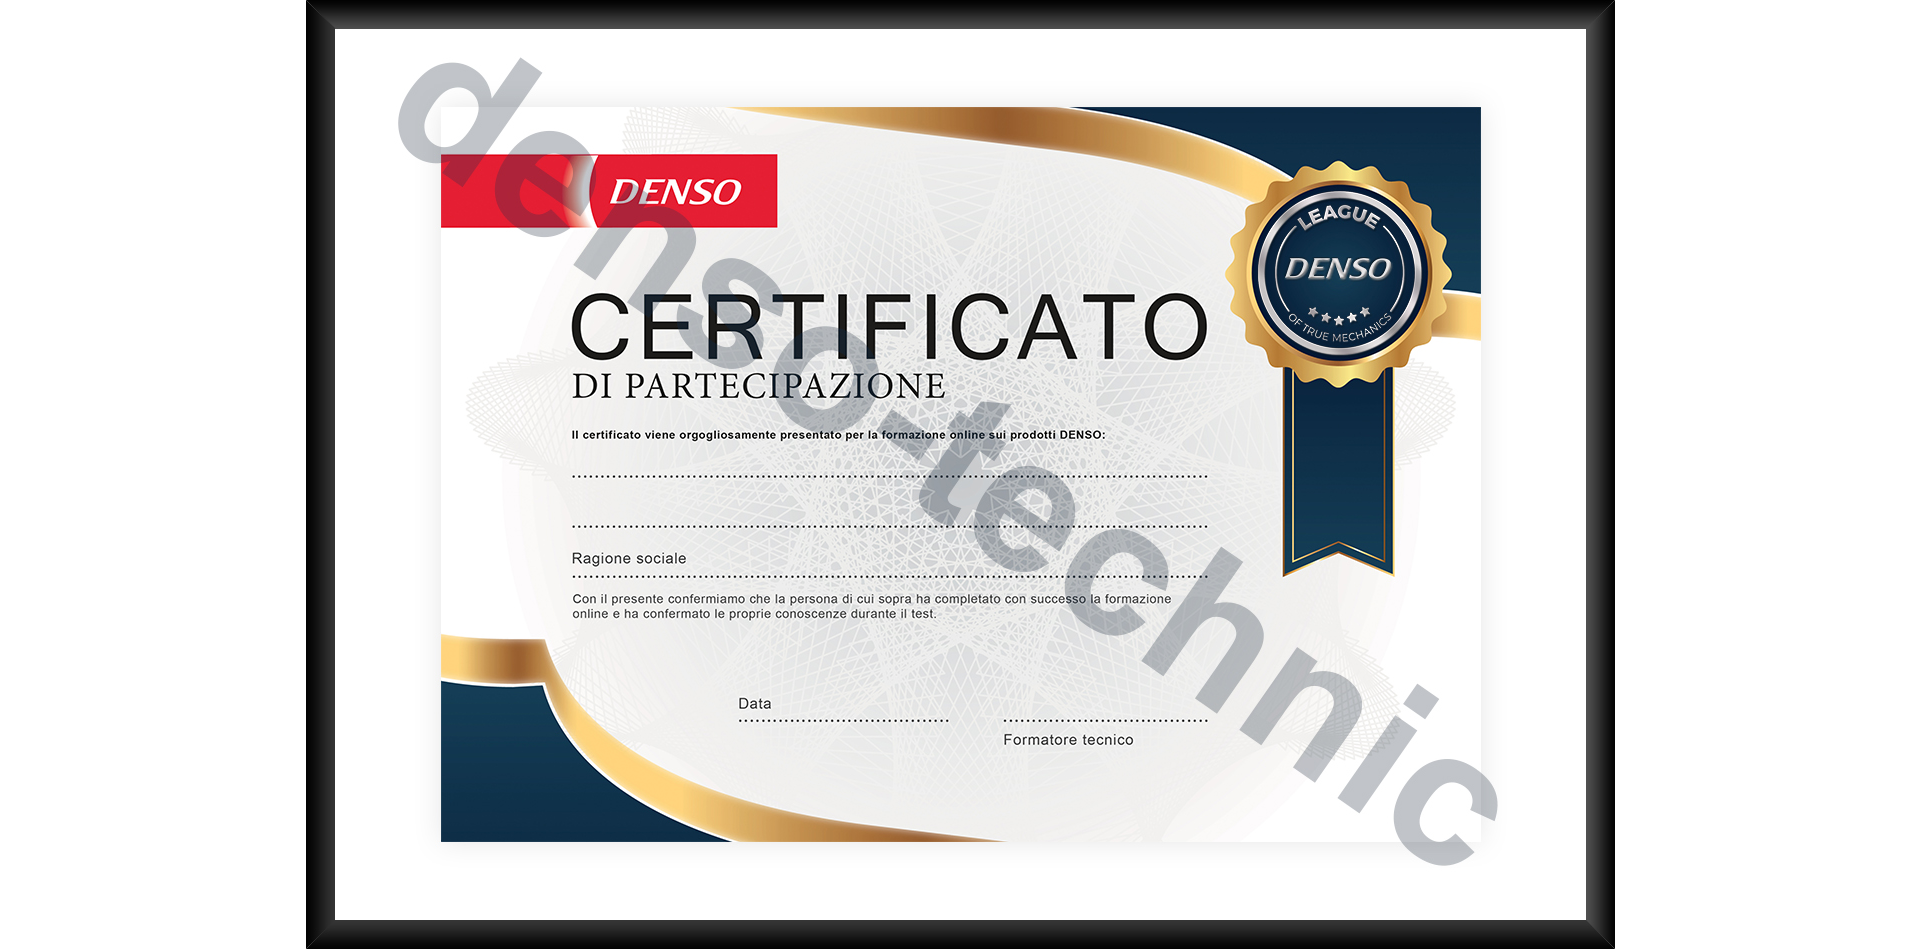 DENSO - Certificato